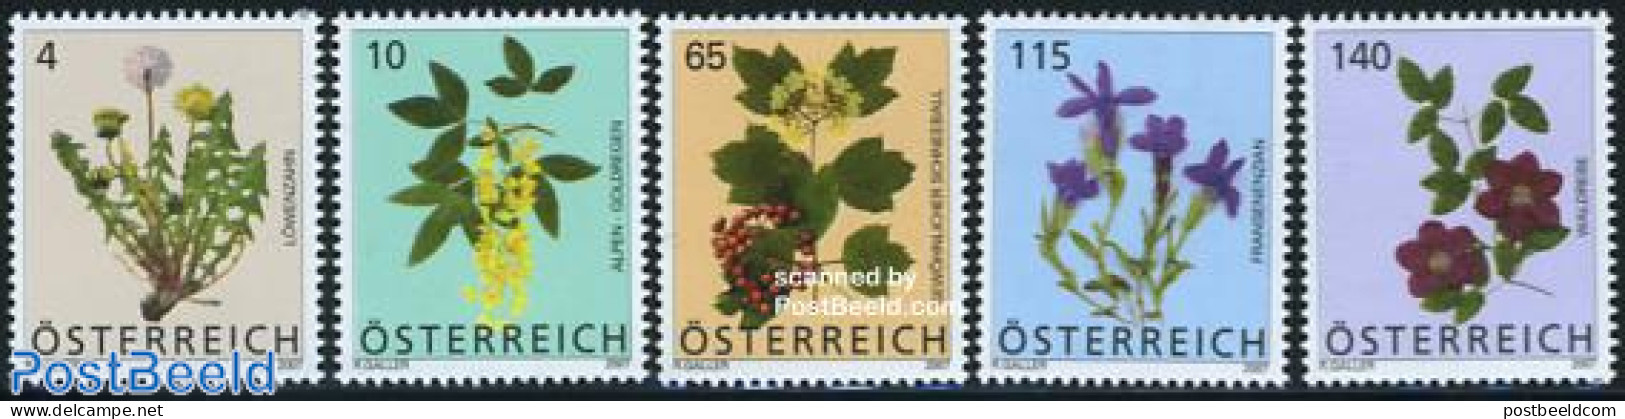 Austria 2007 Definitives, Flowers 5v, Mint NH, Nature - Flowers & Plants - Neufs